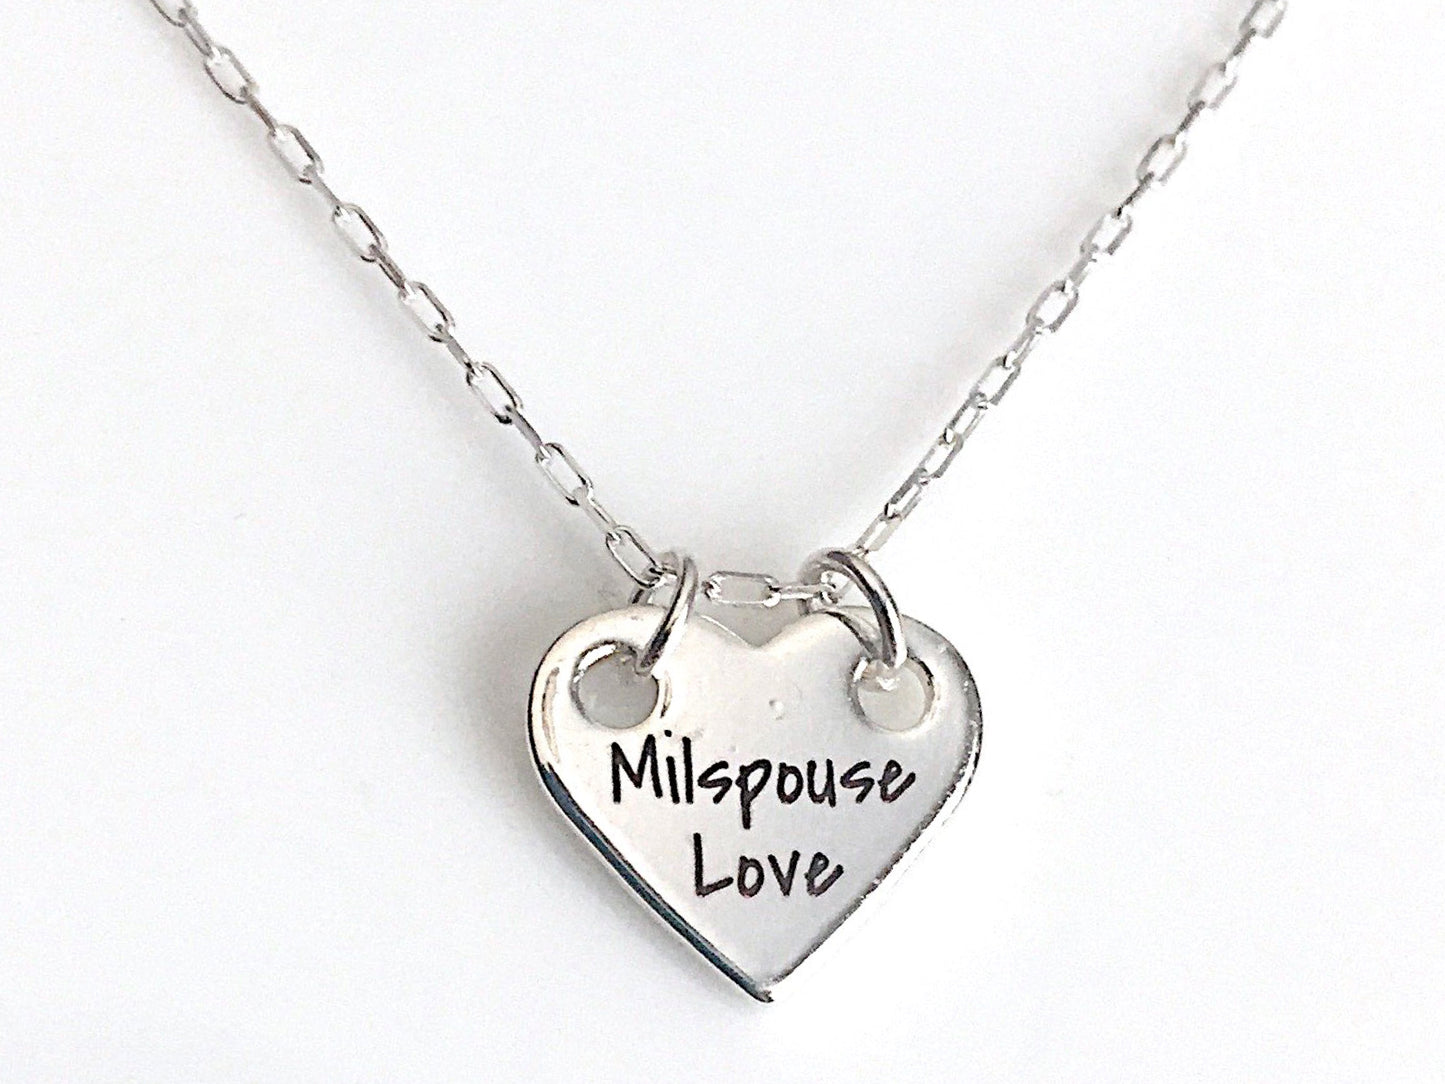 MilSpouse Love Necklace